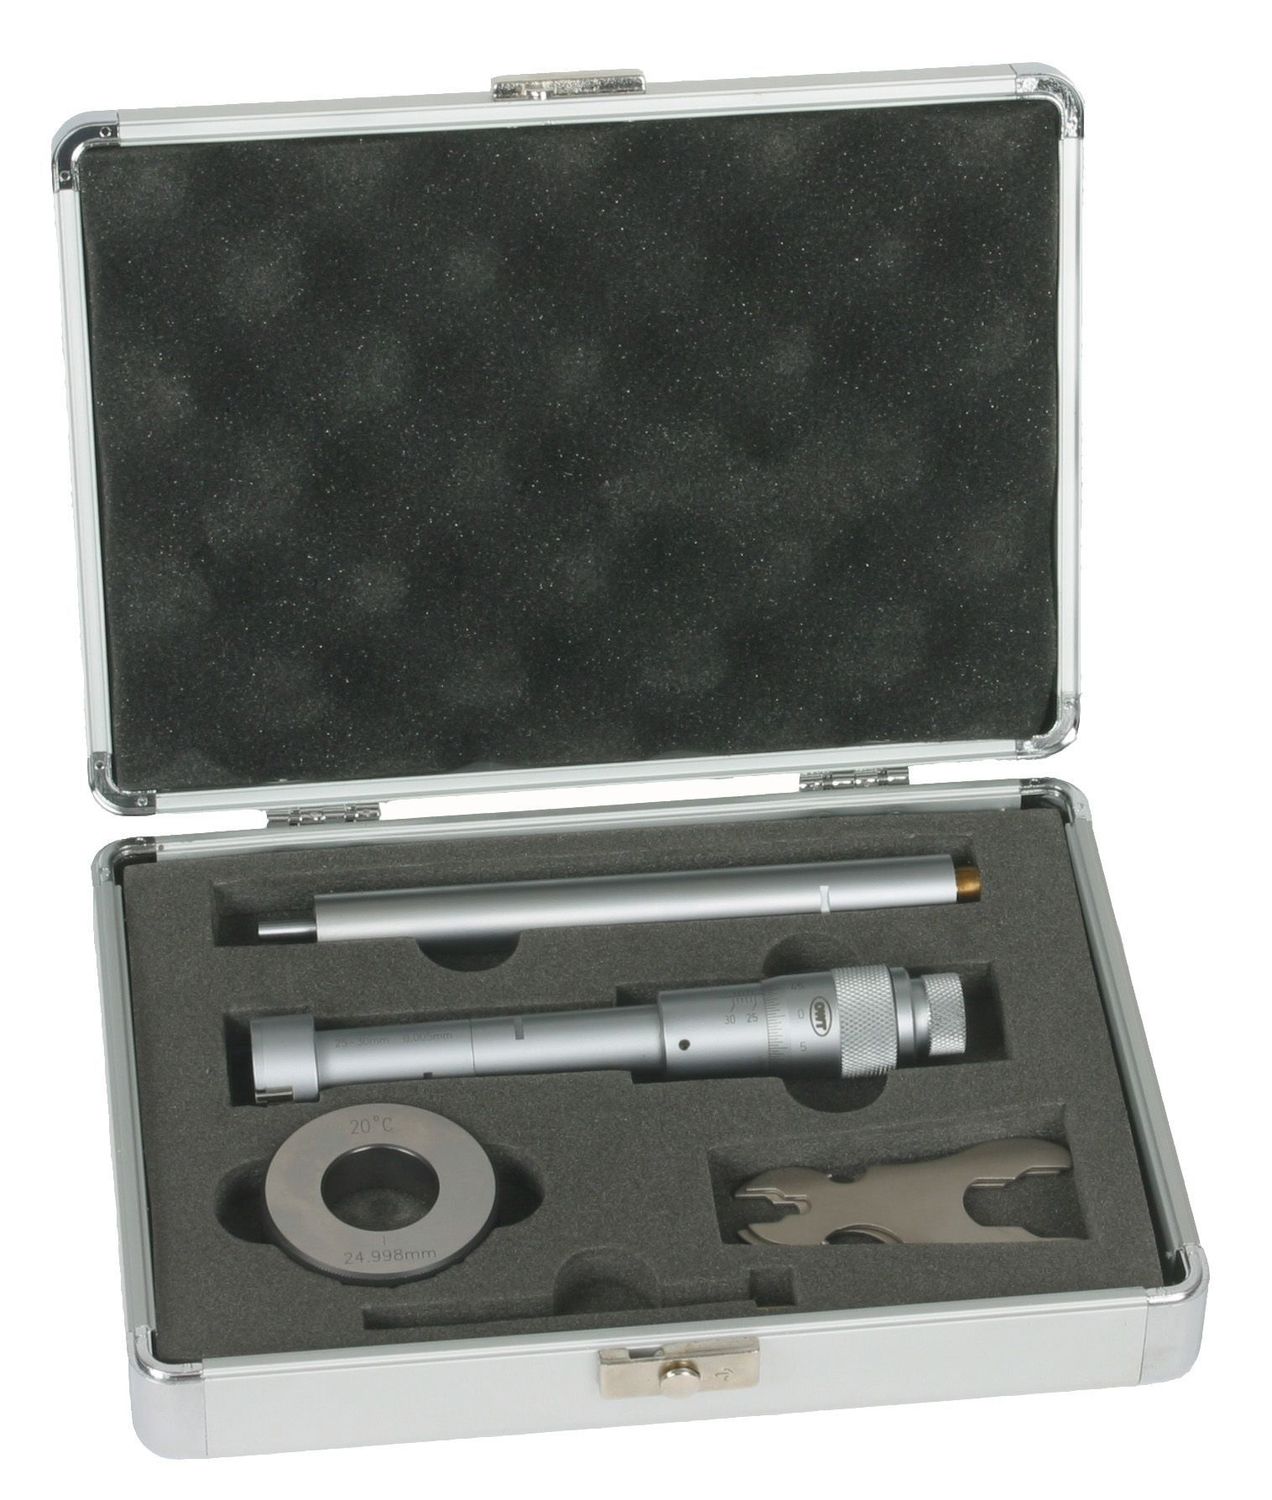 Dreipunkt-Innenmessschraube 6-8 mm DIN 853